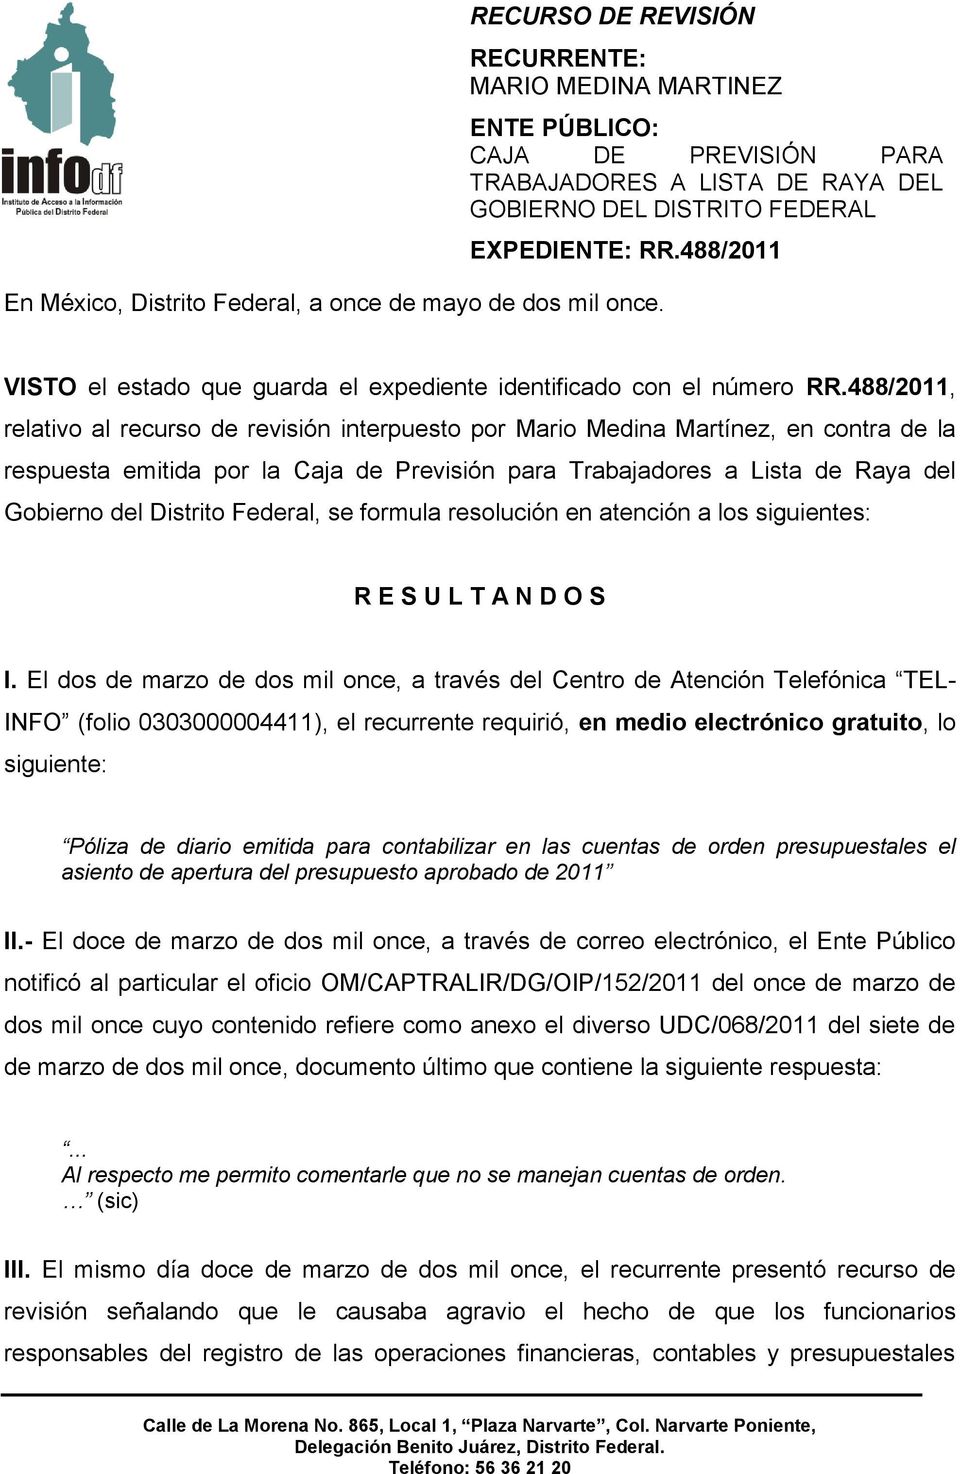 488/2011, relativo al recurso de revisión interpuesto por Mario Medina Martínez, en contra de la respuesta emitida por la Caja de Previsión para Trabajadores a Lista de Raya del Gobierno del Distrito